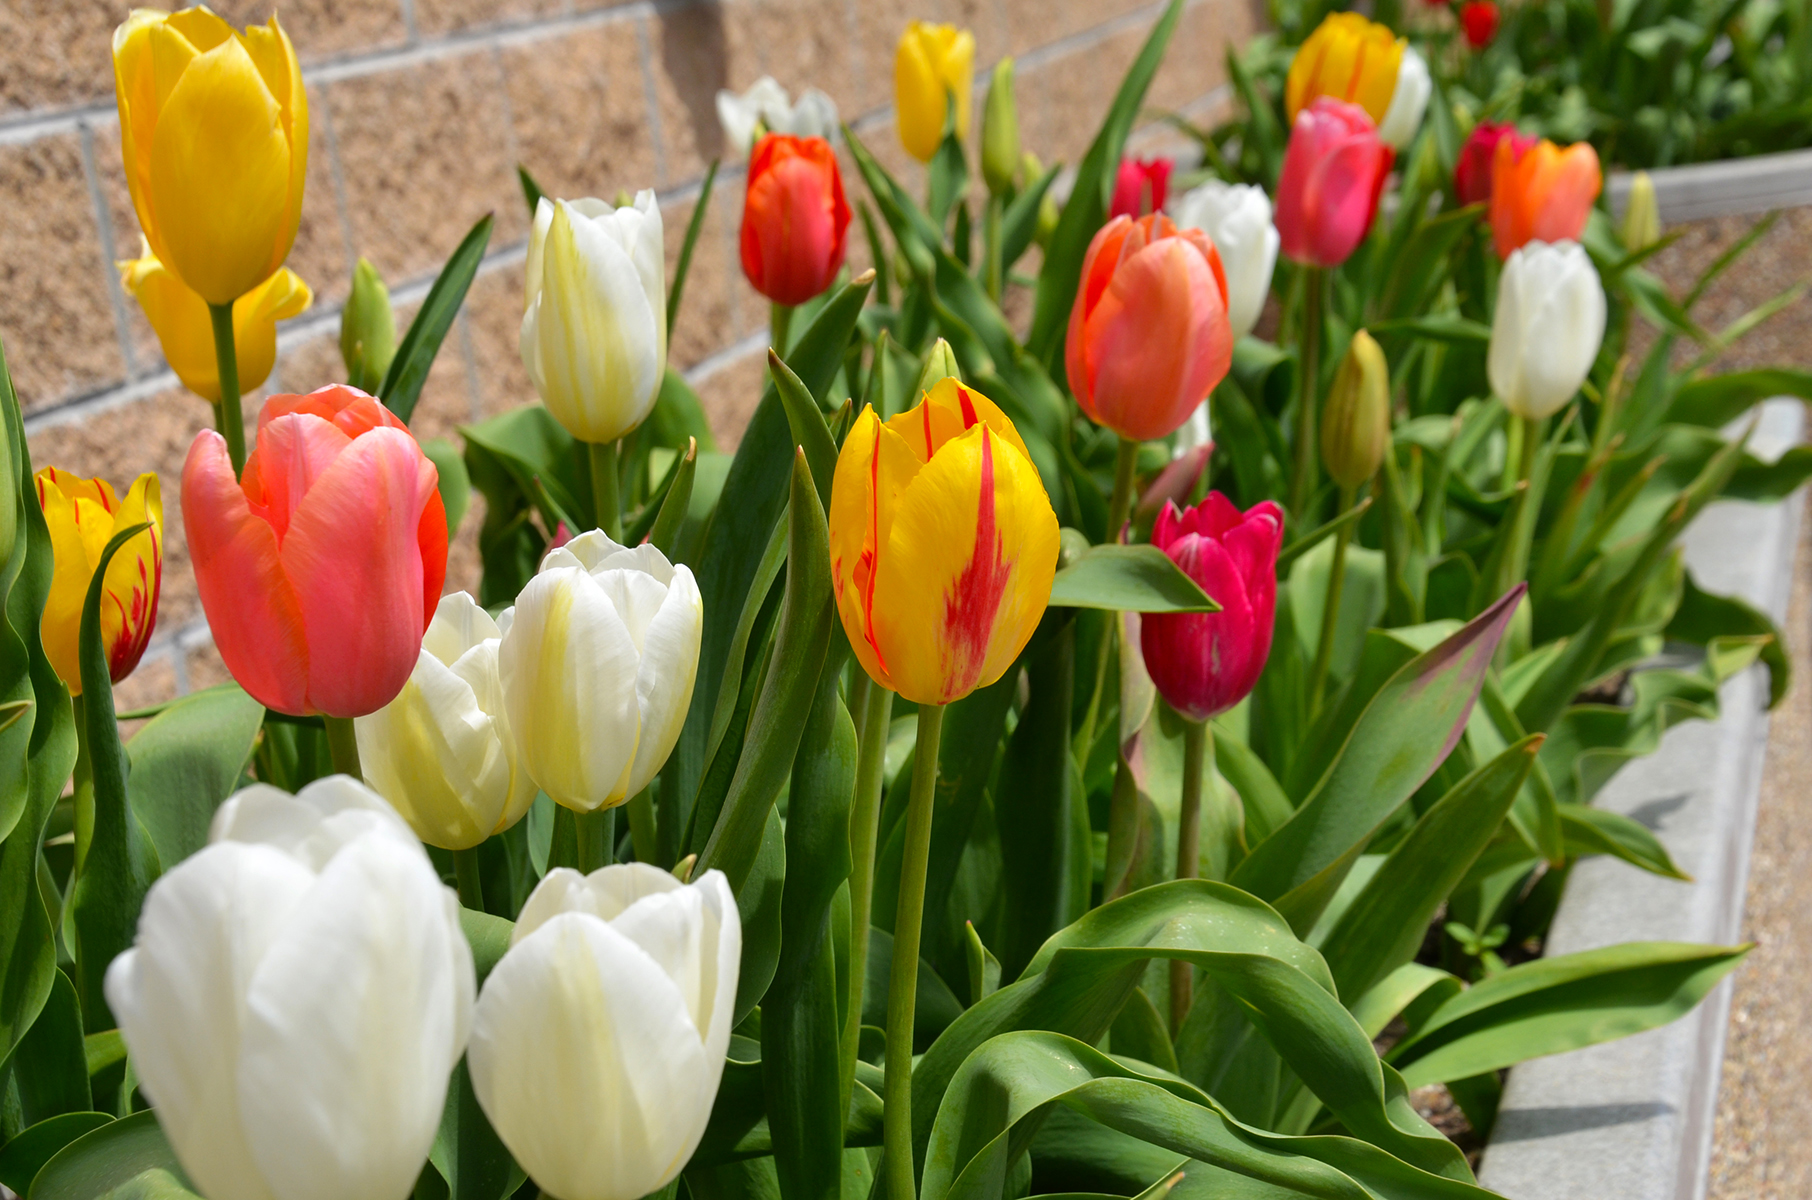 Community invited to enjoy tulips at Evangel University | Evangel ...